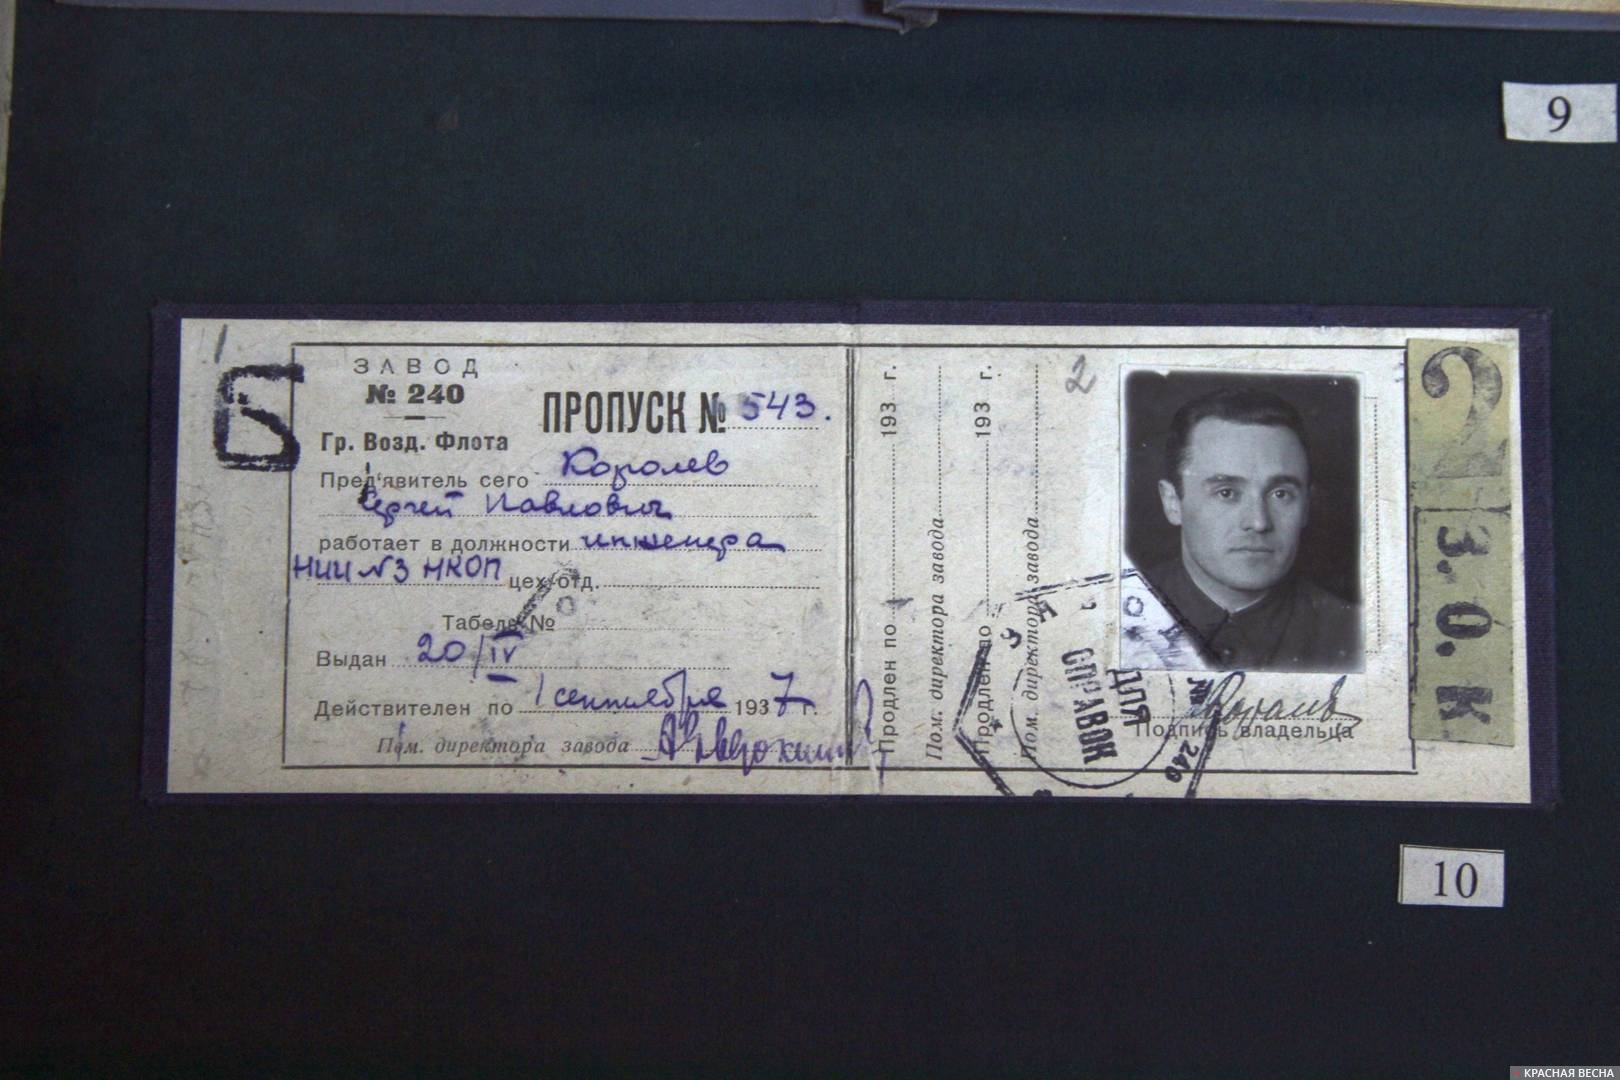 Архивные документы: пропуск С. П. Королева времен работы в НИИ-3 НКОП в 1937 году